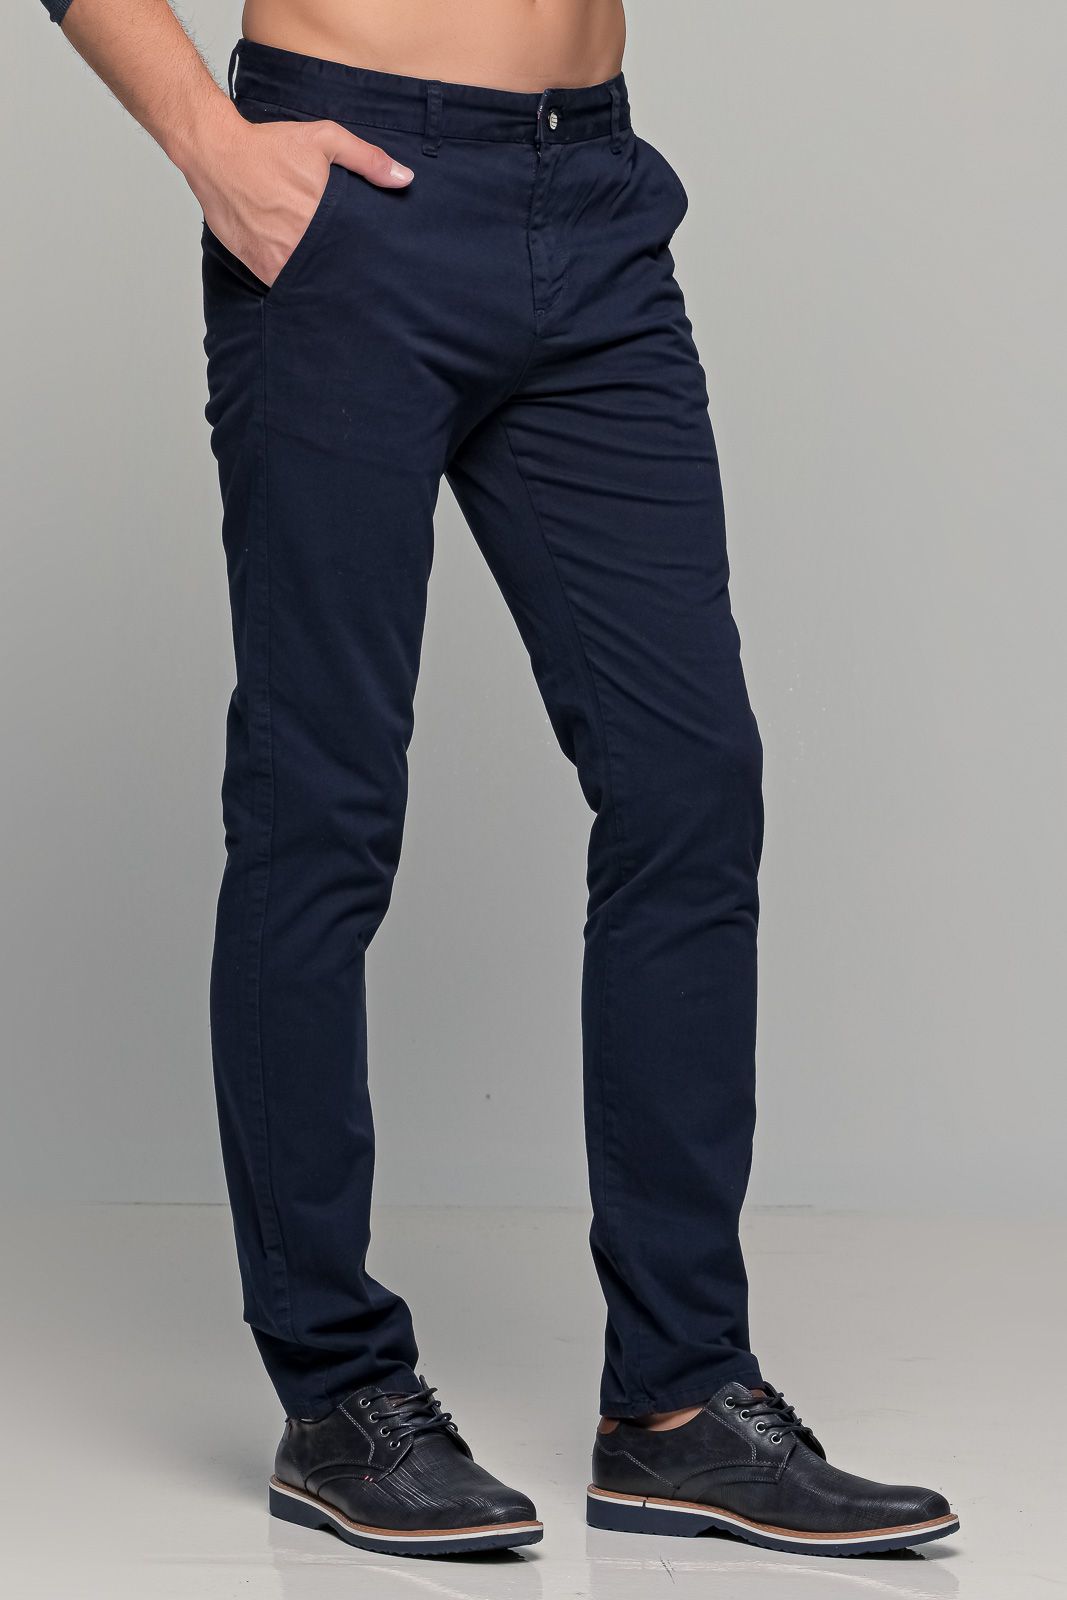 Μπλε ανδρικό παντελόνι chino υφασμάτινο MASSARO - Slim fit